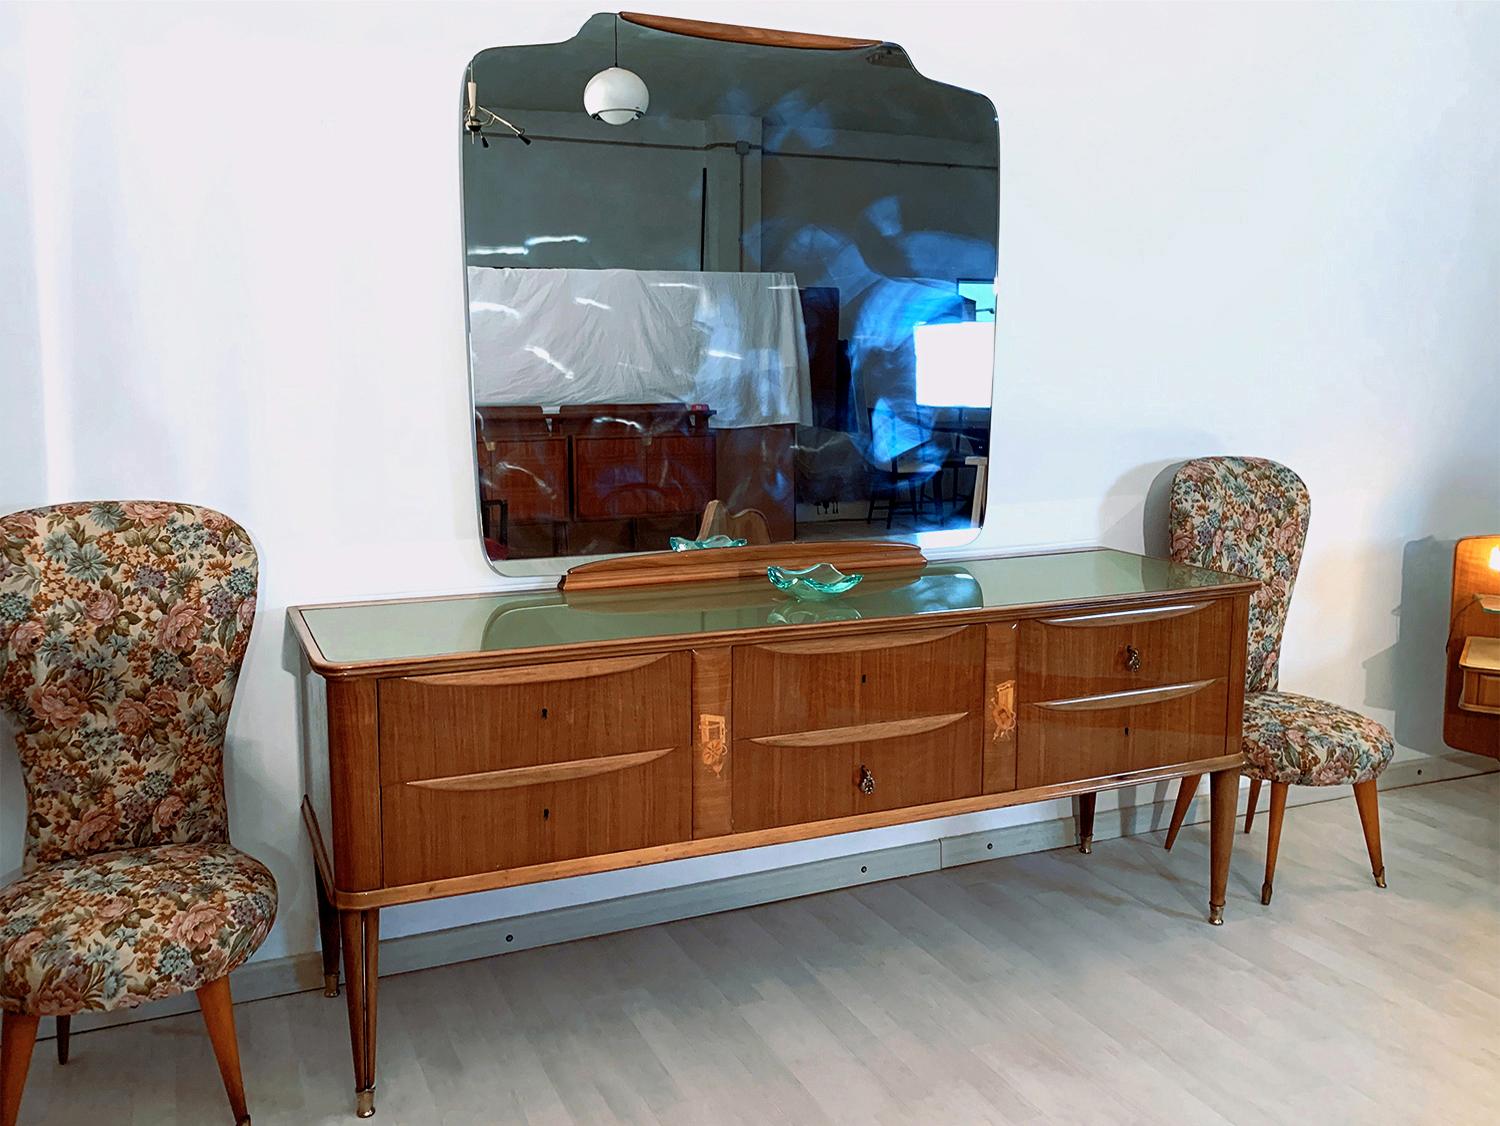 1950s dresser with mirror